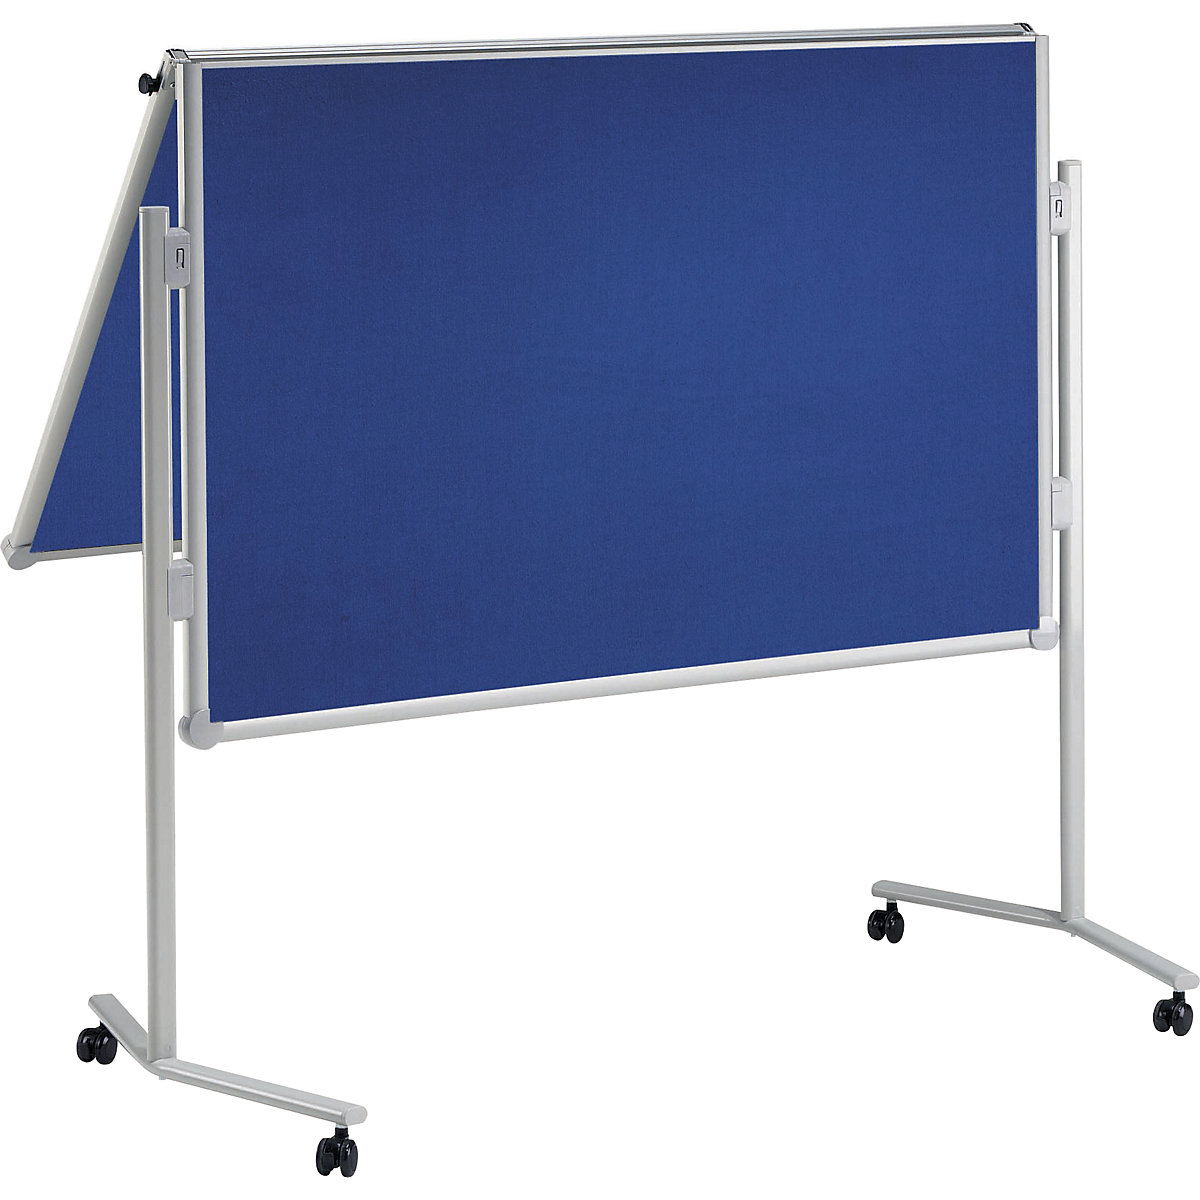 Tablica do prezentacji MAULpro, składana – MAUL, powierzchnia tekstylna, niebieska, szer. x wys. 1200 x 1500 mm-8